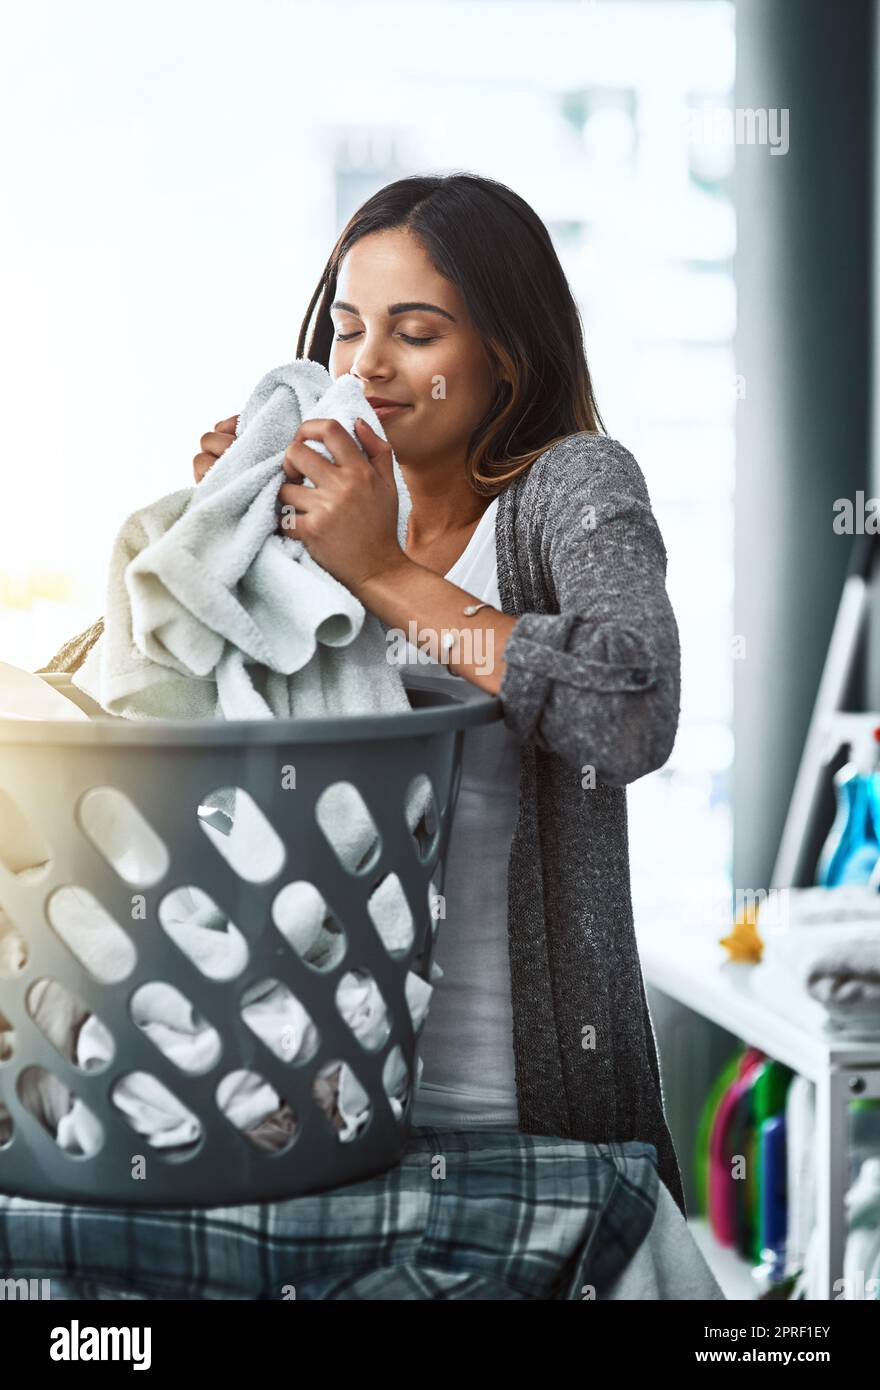 Der erfrischende Geruch von sauberer Wäsche. Eine junge attraktive Frau, die ihre Wäsche zu Hause macht. Stockfoto